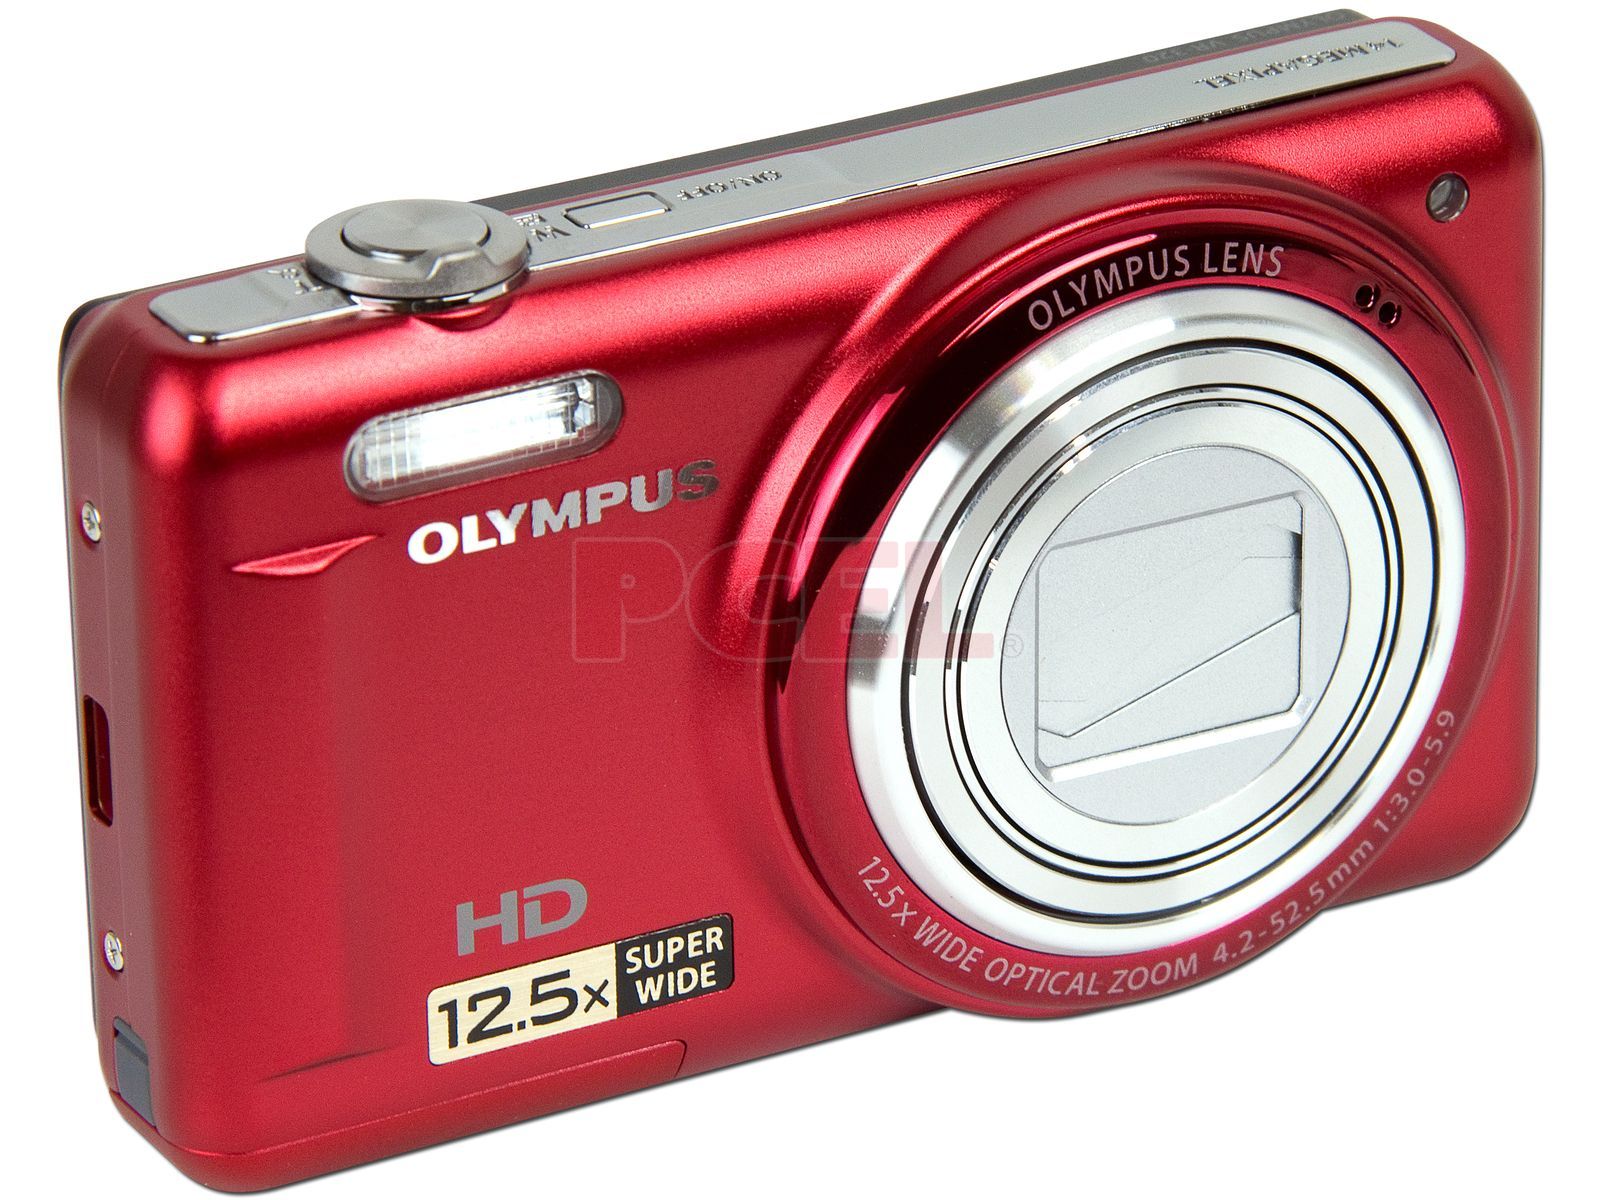 Cámara Fotográfica Digital Olympus de 14MP, Zoom Óptico Video 720p. Color Roja